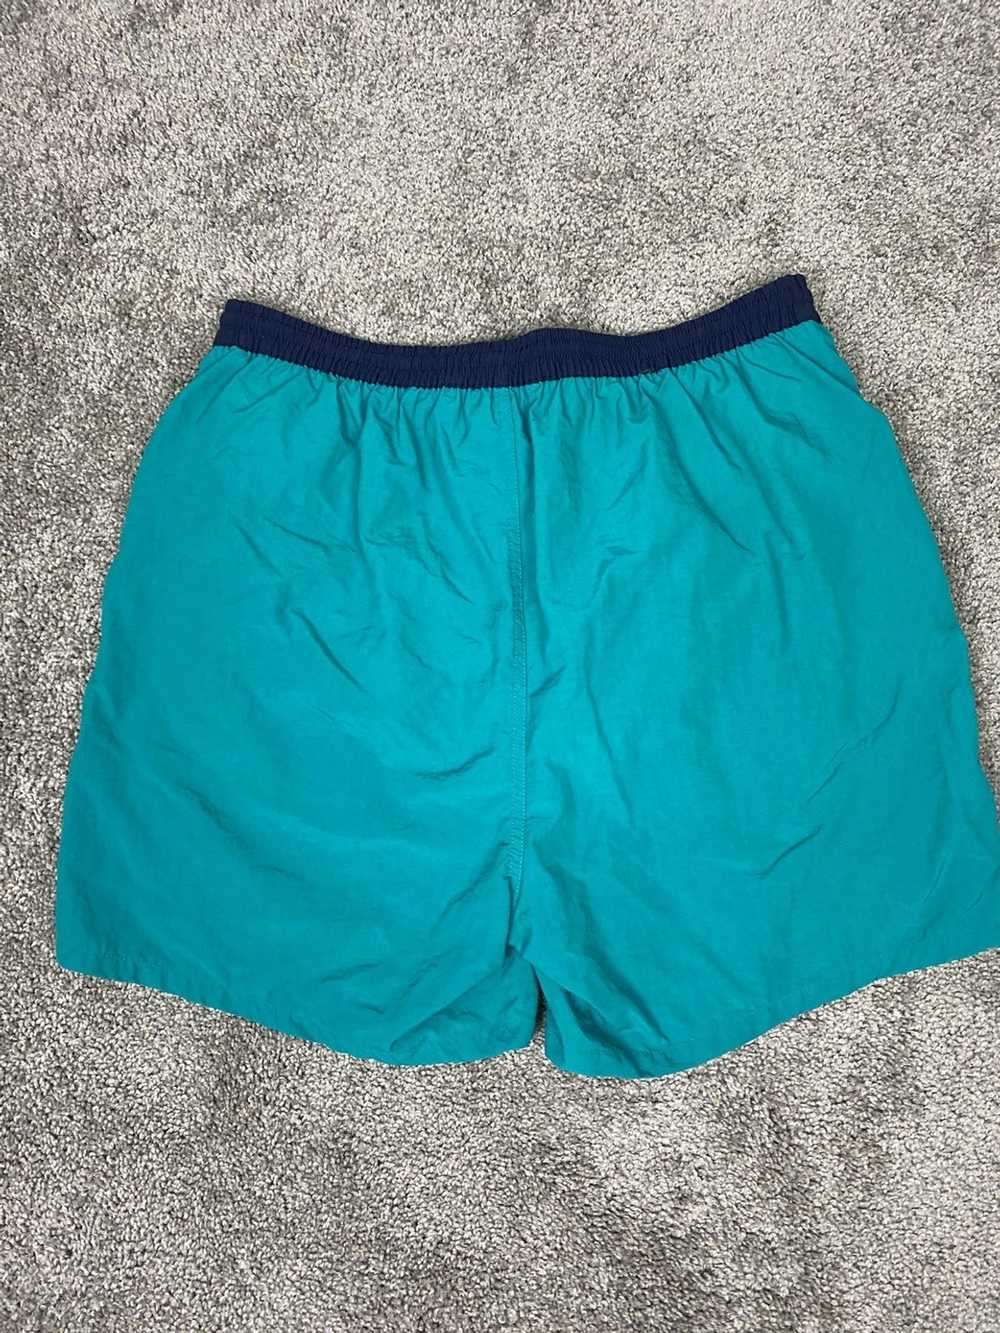 Streetwear × Vintage Vintage teal shorts with dar… - image 2